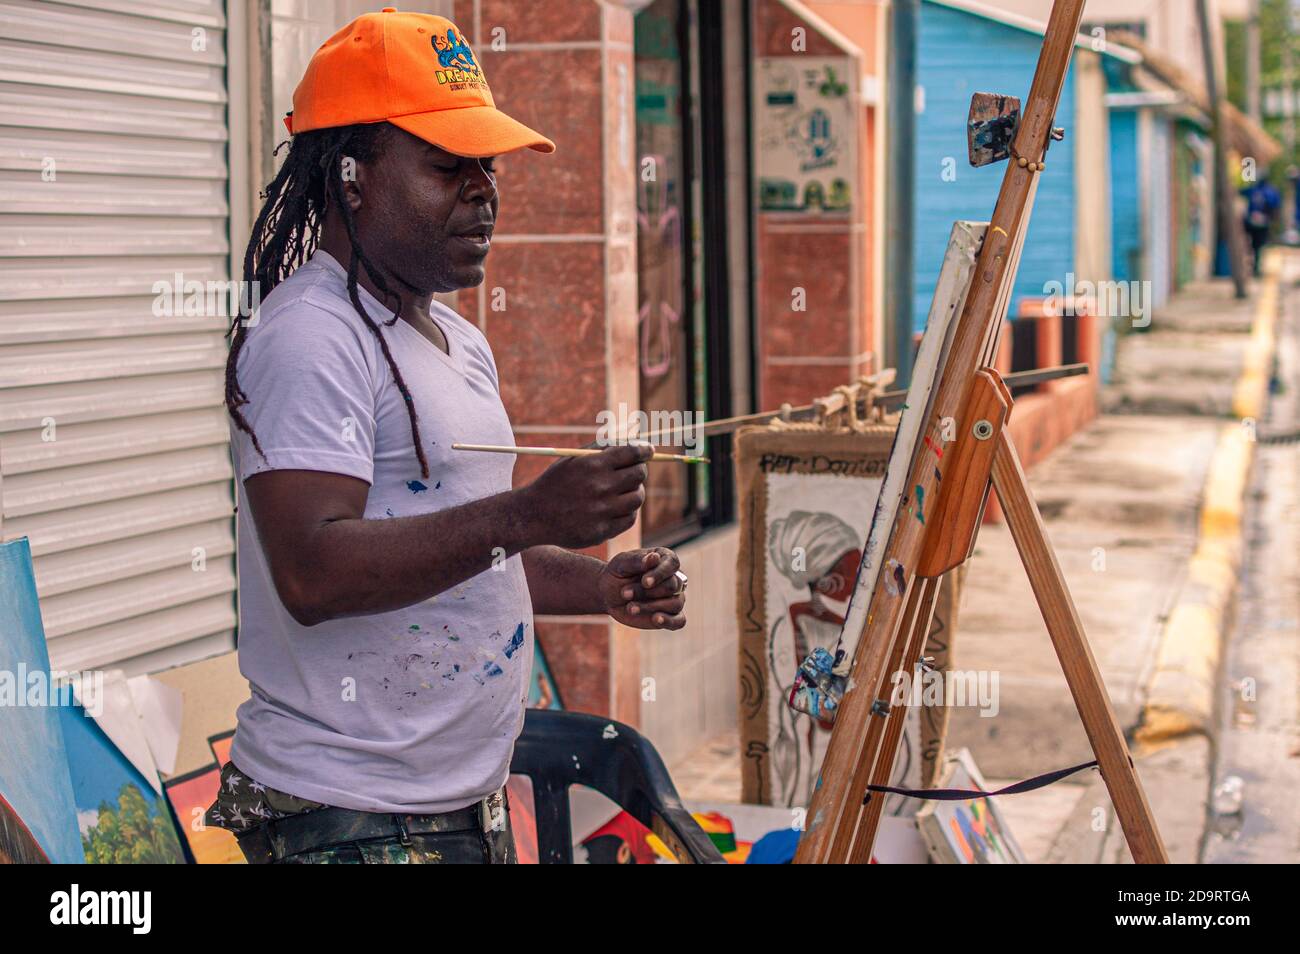 BAYAHIBE, REPÚBLICA DOMINICANA 21 DE ENERO de 2020: Pintor callejero dominicano en Bayahibe Foto de stock